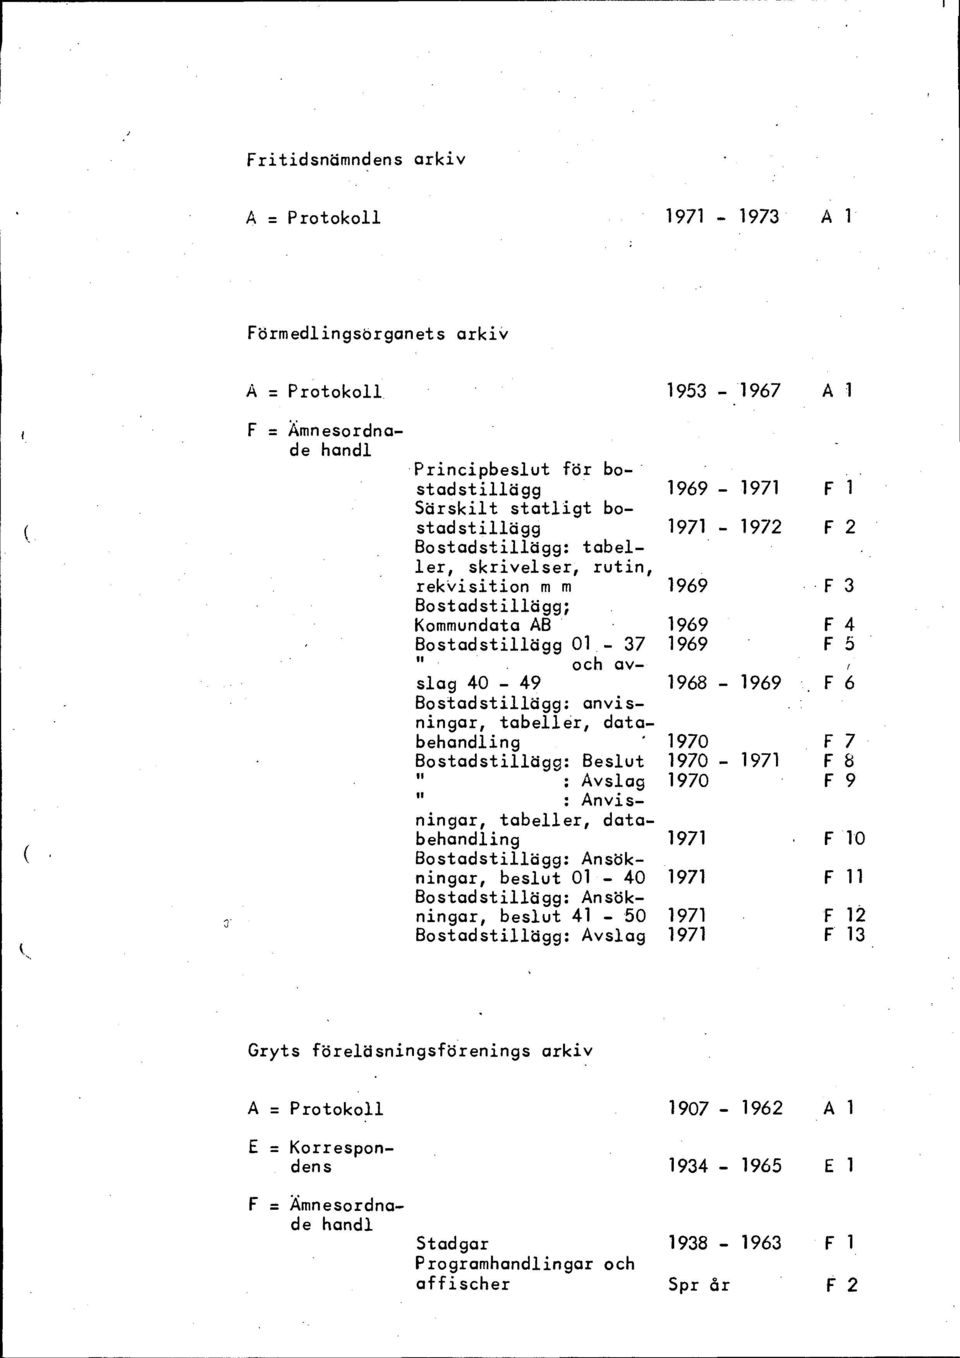 F 6 Bostadstillägg: anvisningar, tabeller, databeing ' 1970 F 7 Bostadstillägg: Beslut 1970-1971 F 8 : Avslag 1970 F 9 It : Anvisningar, tabeller, databeing 1971 F 10 Bostadstillägg: Ansökningar,